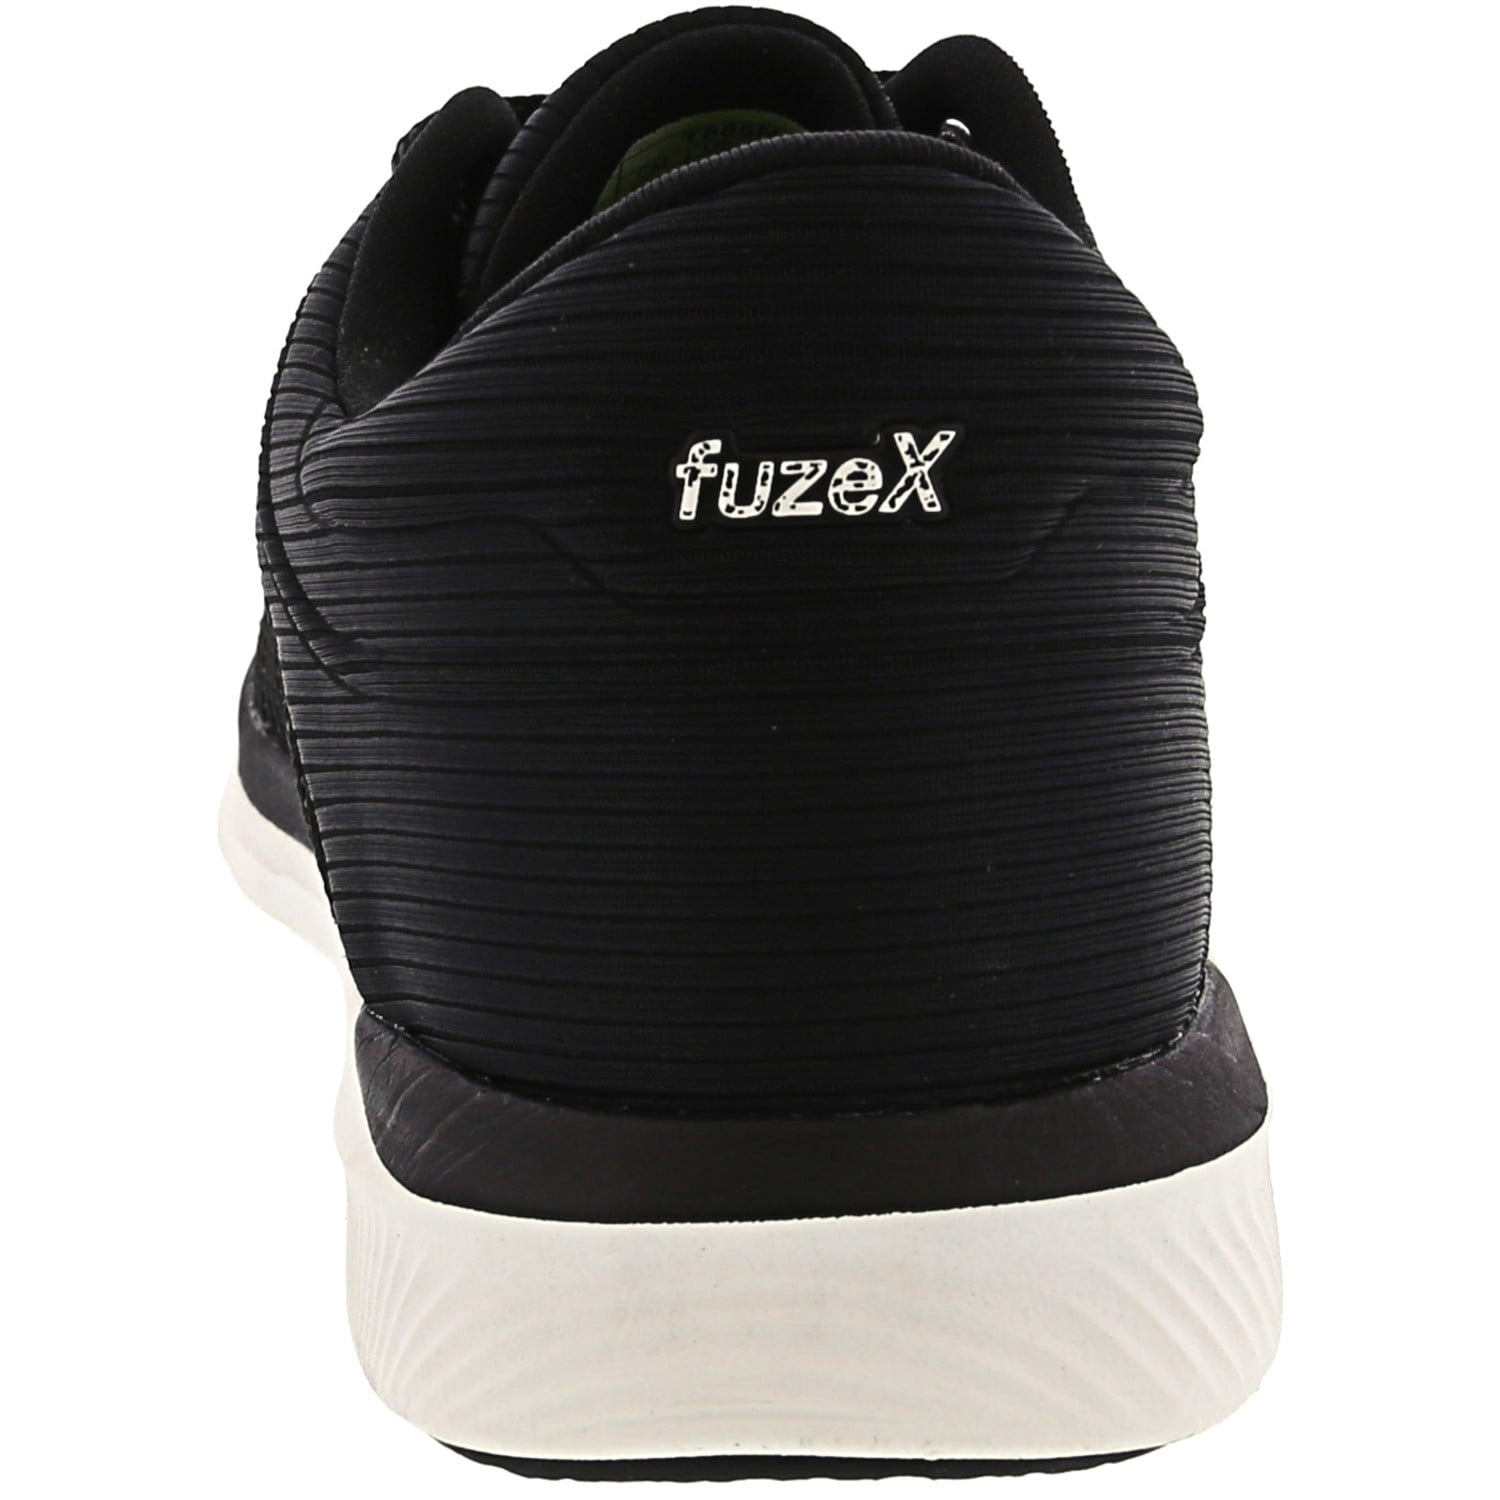 asics fuzex rush adapt women's running shoes